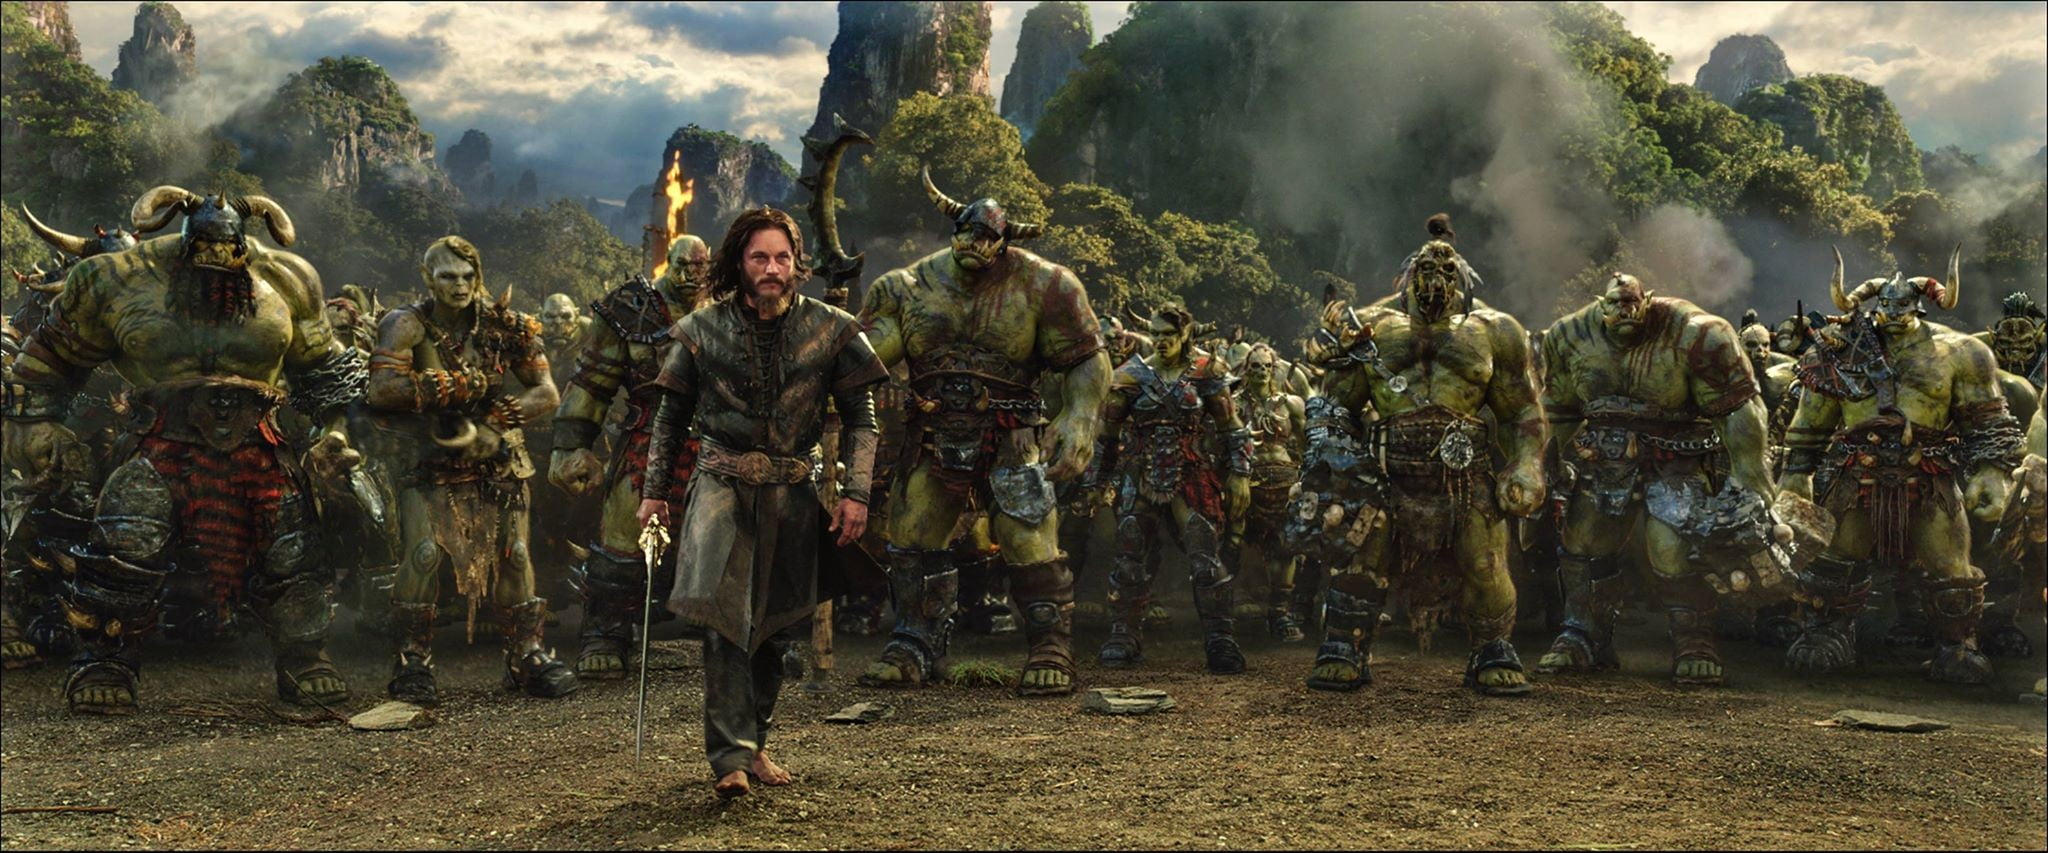 World Warcraft movie scene